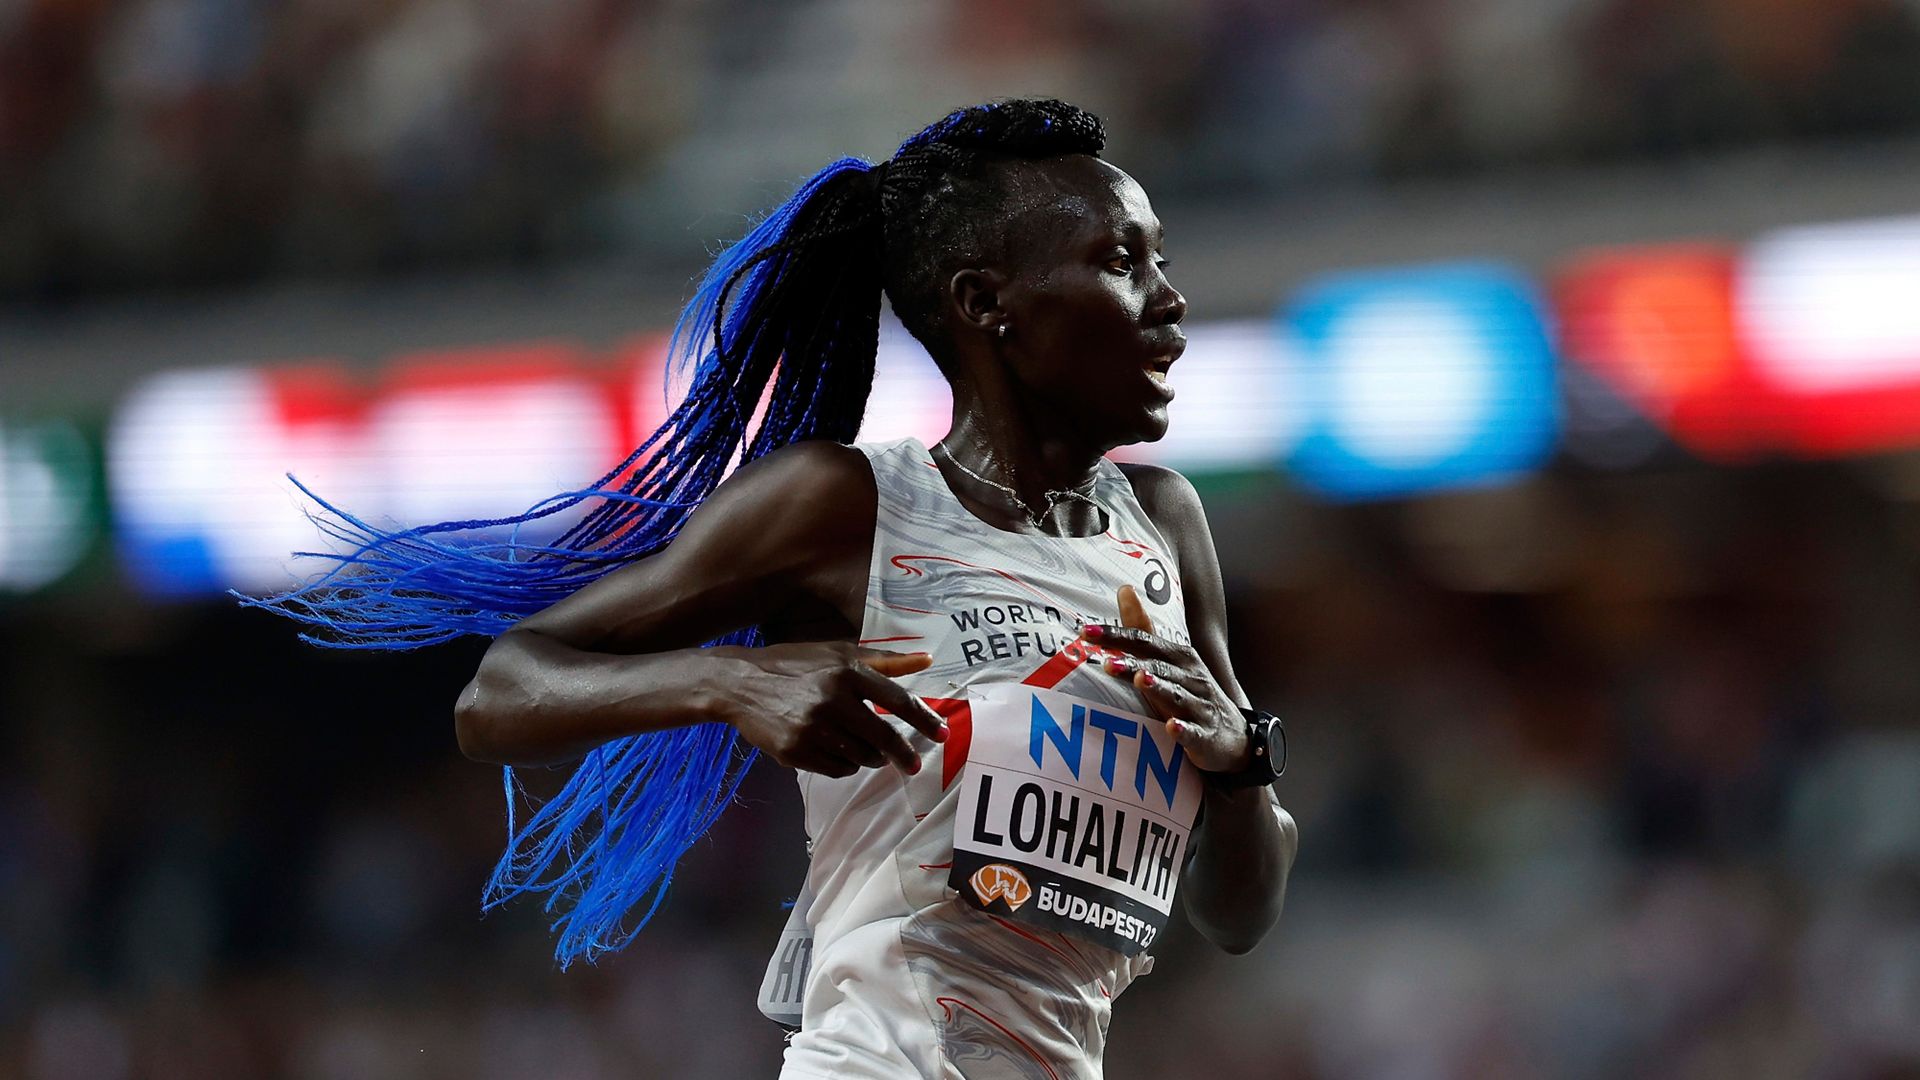 flüchtlingsteam für olympia 2024: läuferin mit positivem dopingtest – schon wieder trimetazidin